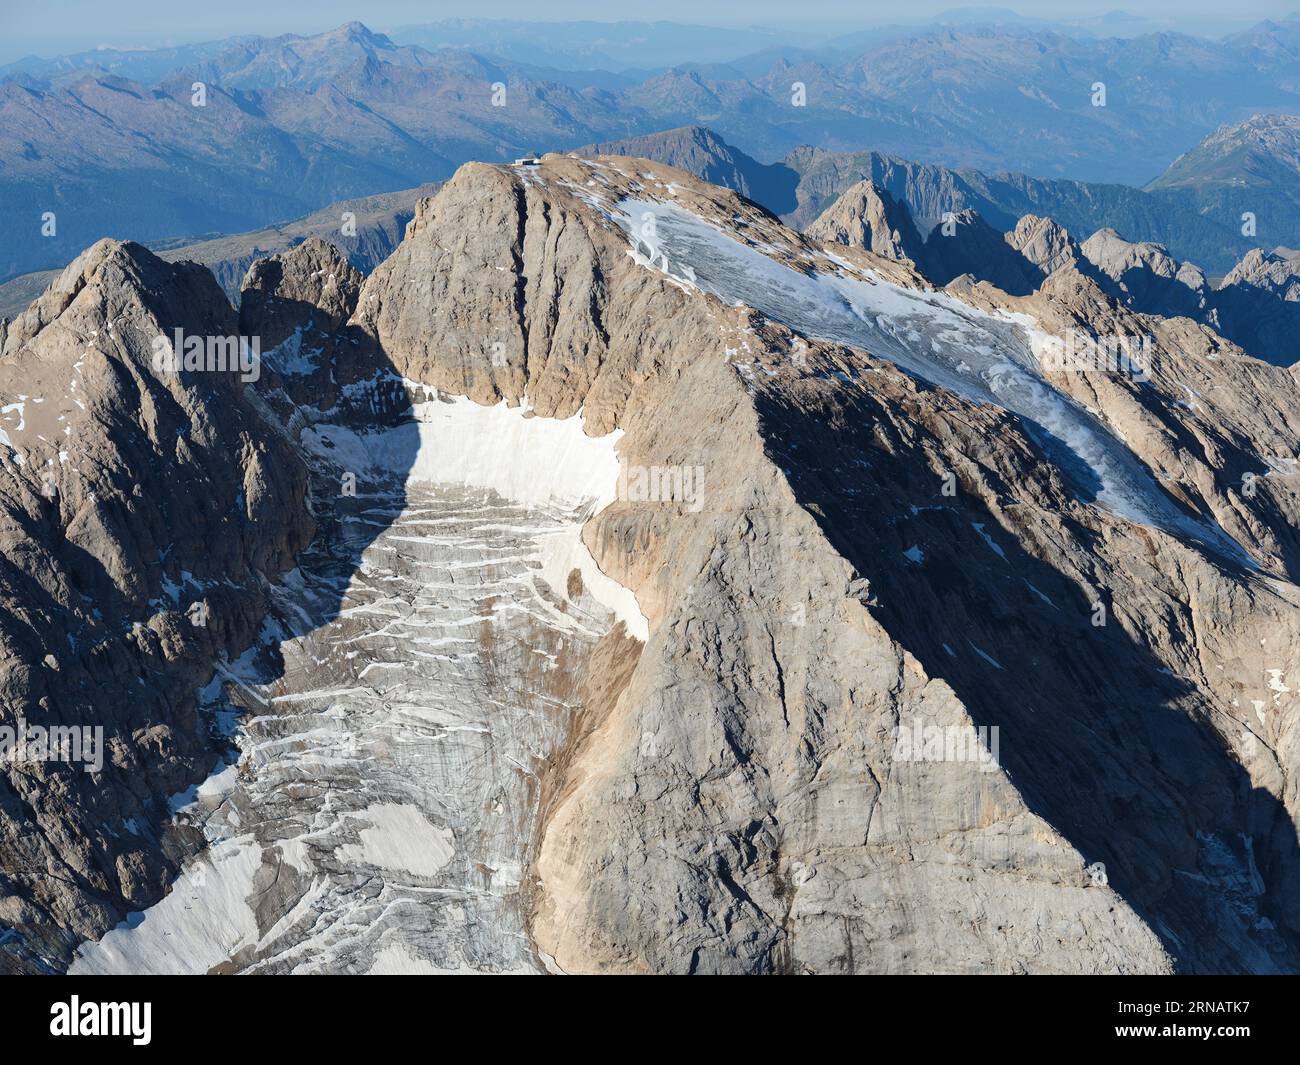 VUE AÉRIENNE. Côté nord de la Marmolada (3343m) et les seuls glaciers des Dolomites. Trentin-Haut-Adige (côté sud est en Vénétie), Italie. Banque D'Images